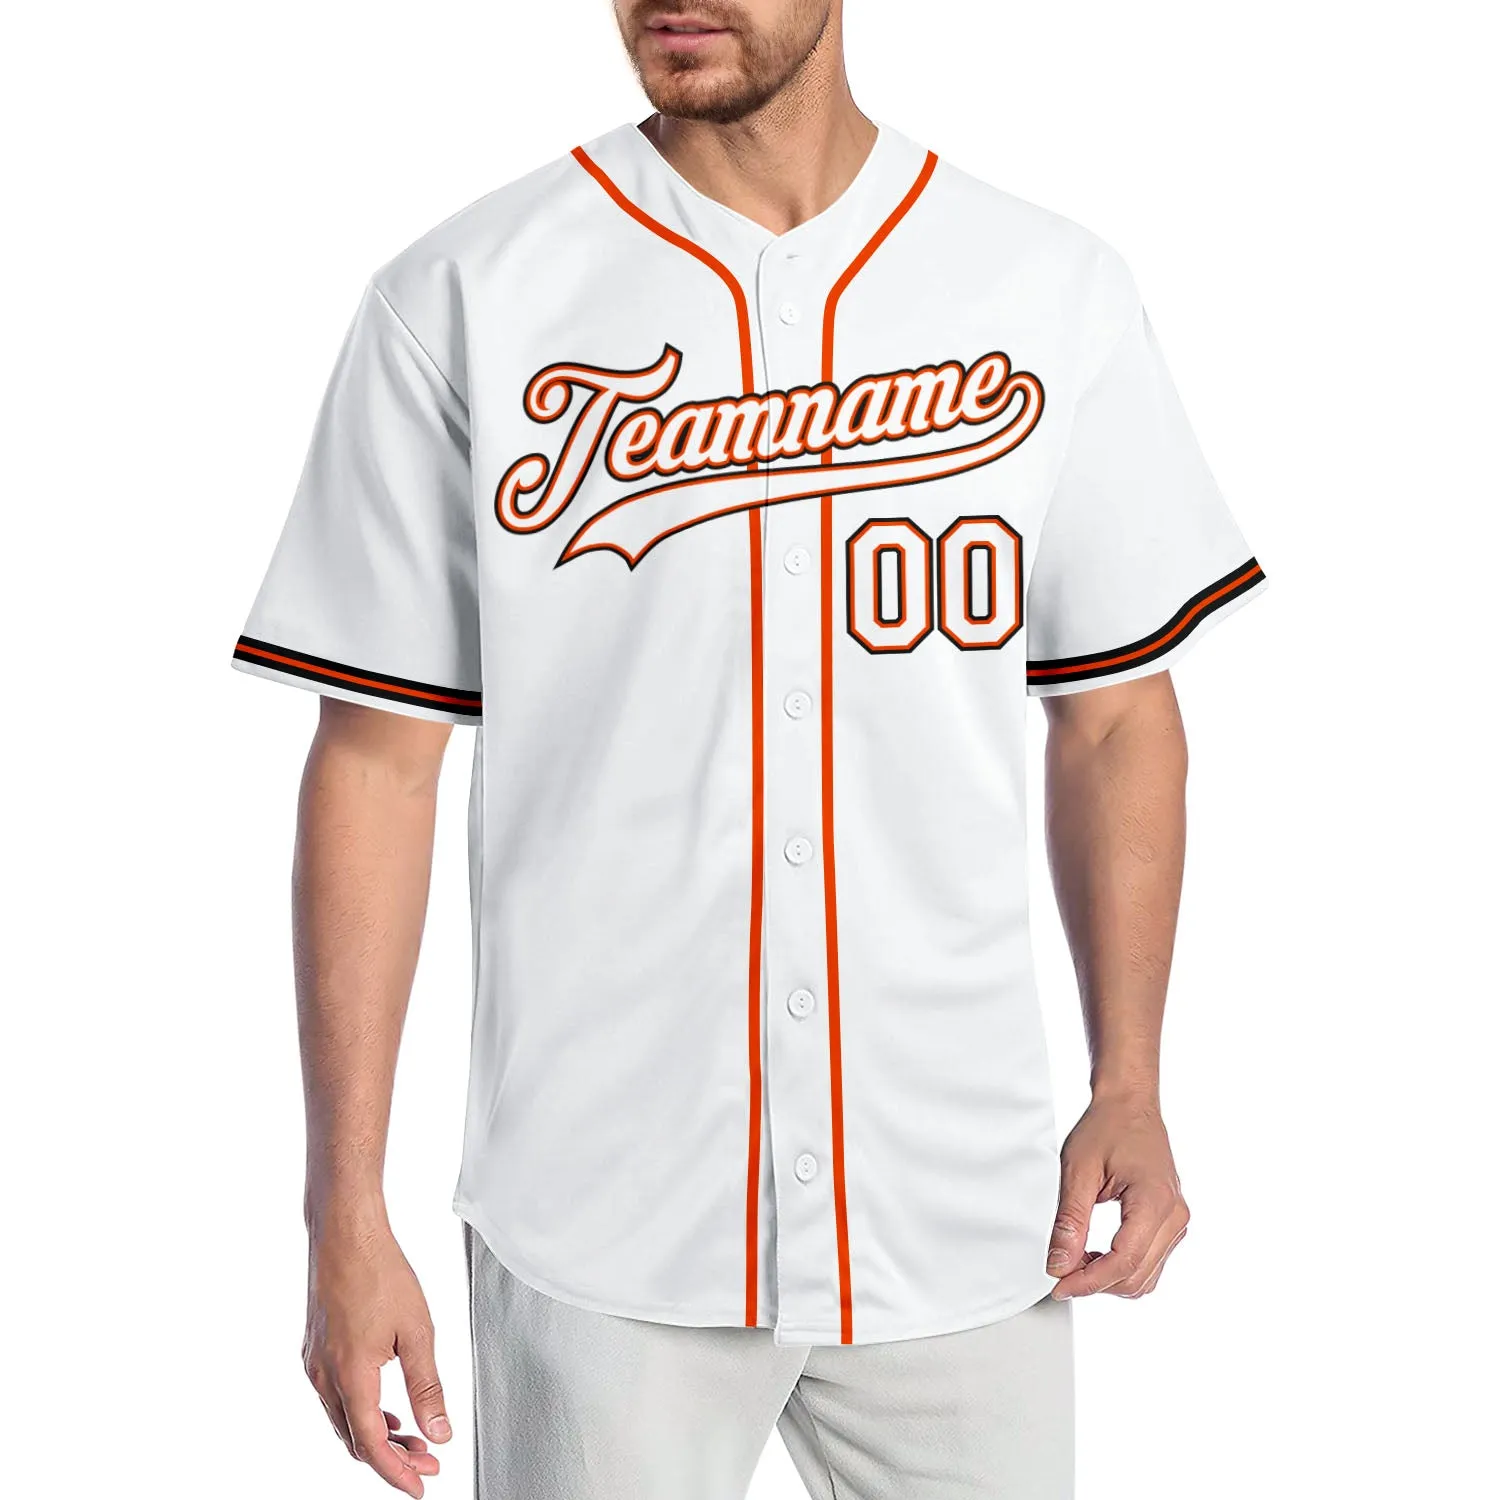 Benutzerdefinierte weiße weiß-orange authentische Baseballtrikot